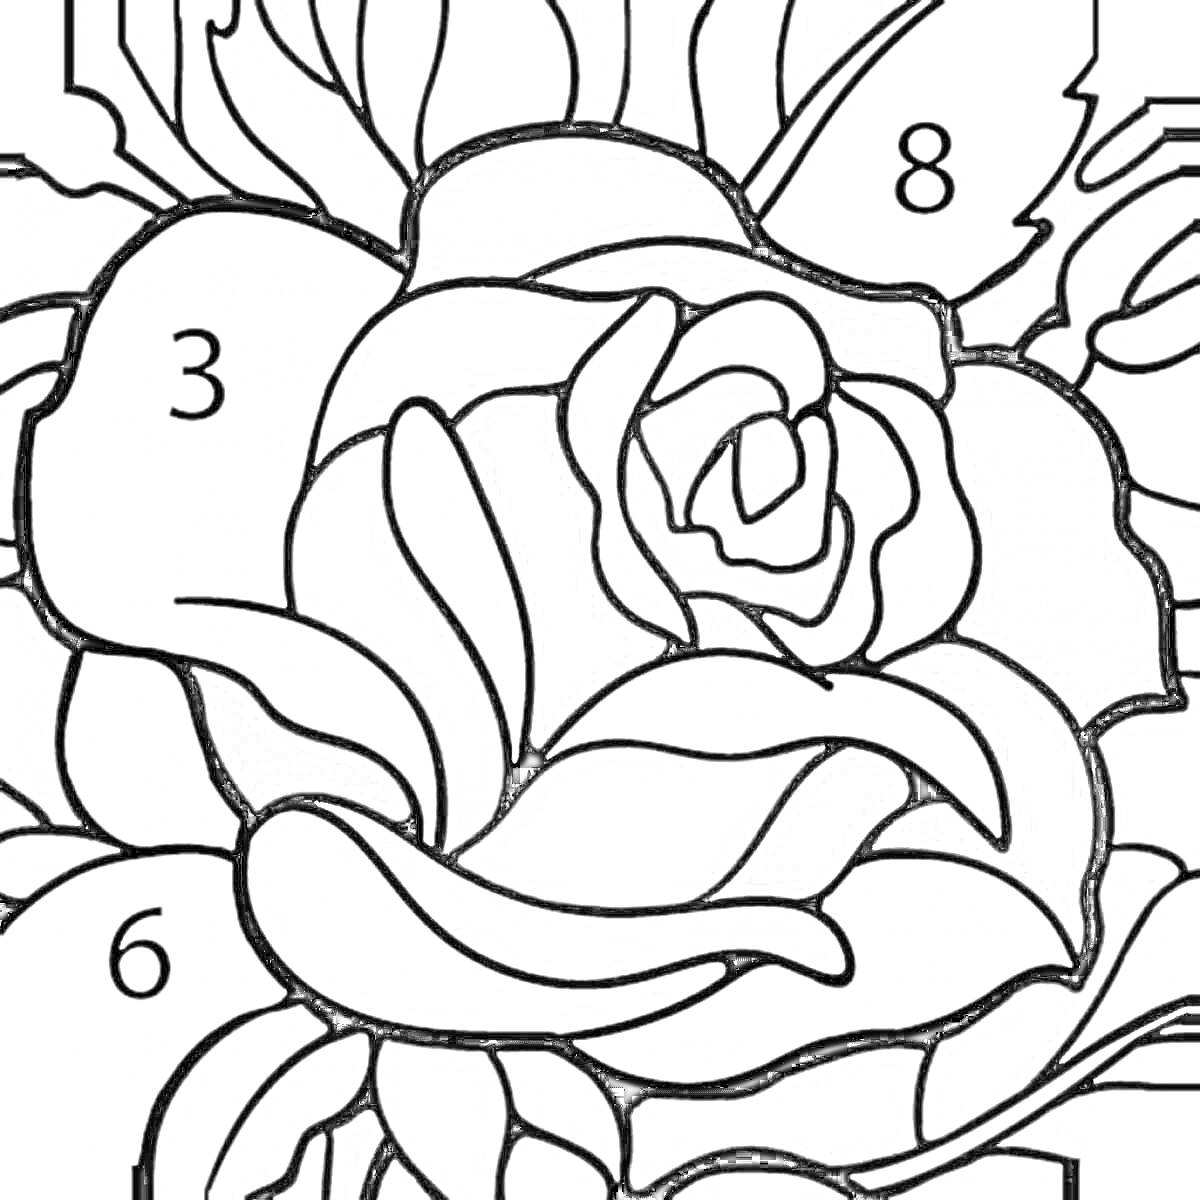 Раскраска Роза - цветок раскраска по номеру цвета, красные и белые лепестки, зеленые листья.